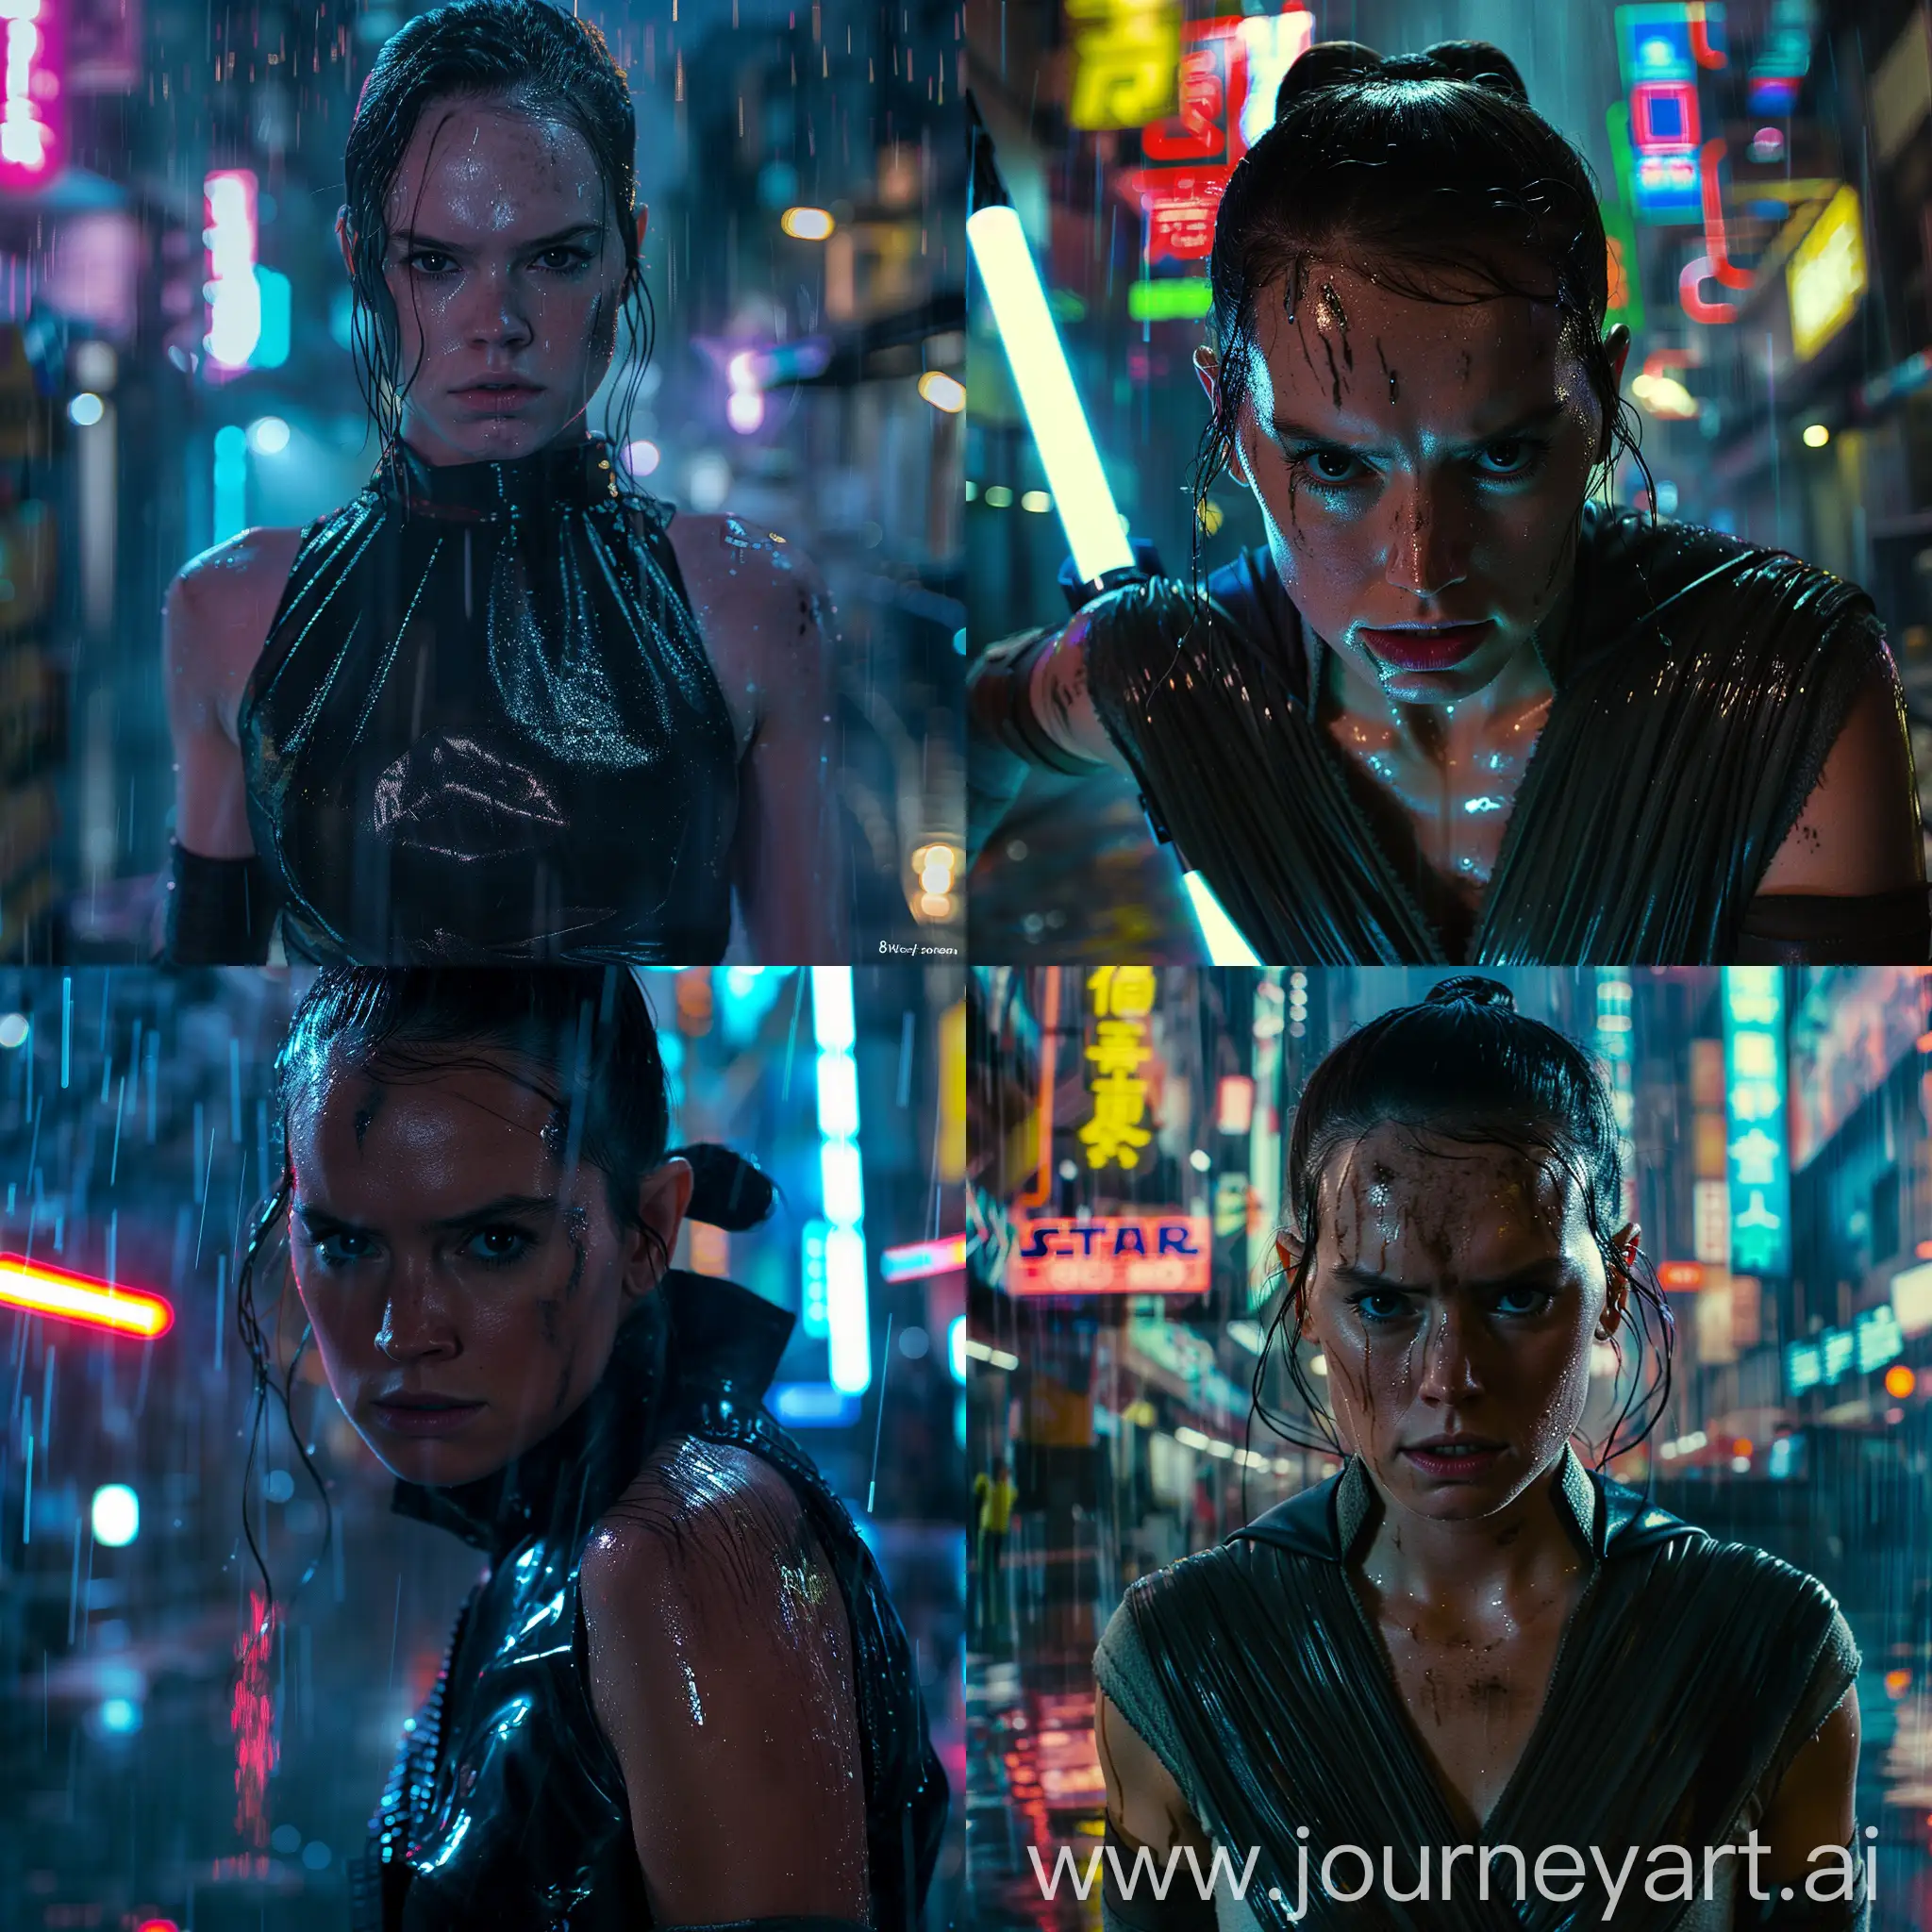 Daisy-Ridley-as-Rey-Skywalker-Cyberpunk-City-Portrait-in-Neon-Rain